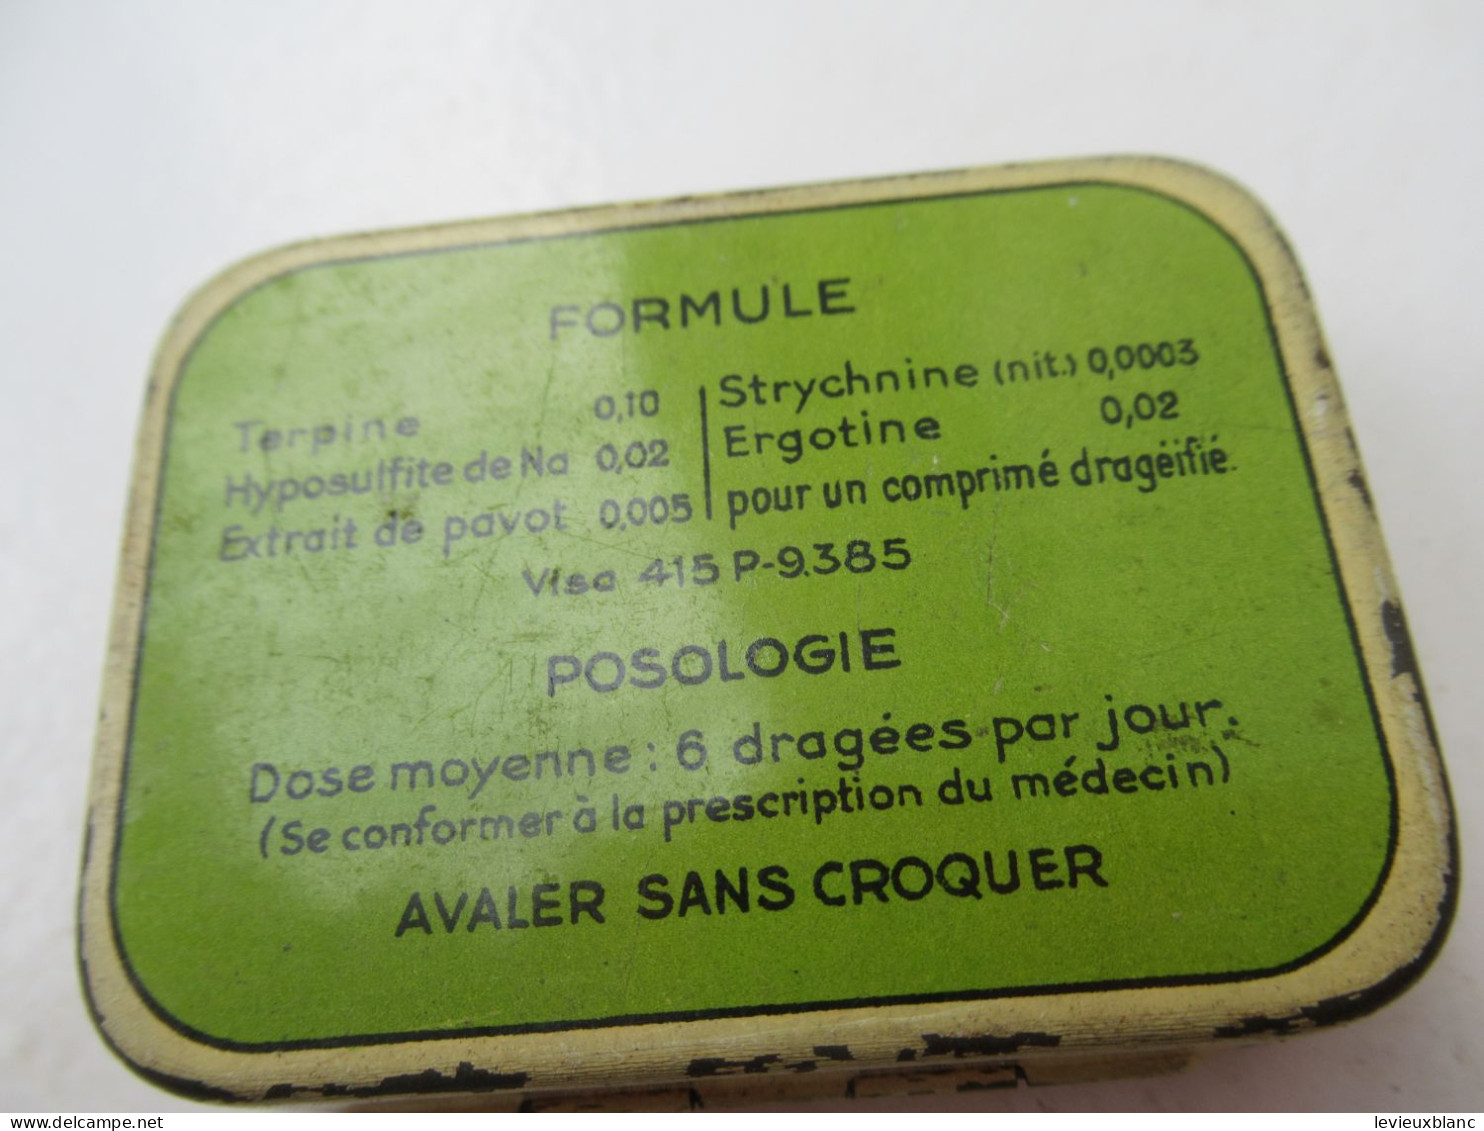 Boite Publicitaire Métallique/BRONCOTONINE /Toux Des Chroniques/ Laboratoires TORAUDE Paris /Vers 1960-1980  BFPP267 - Boîtes